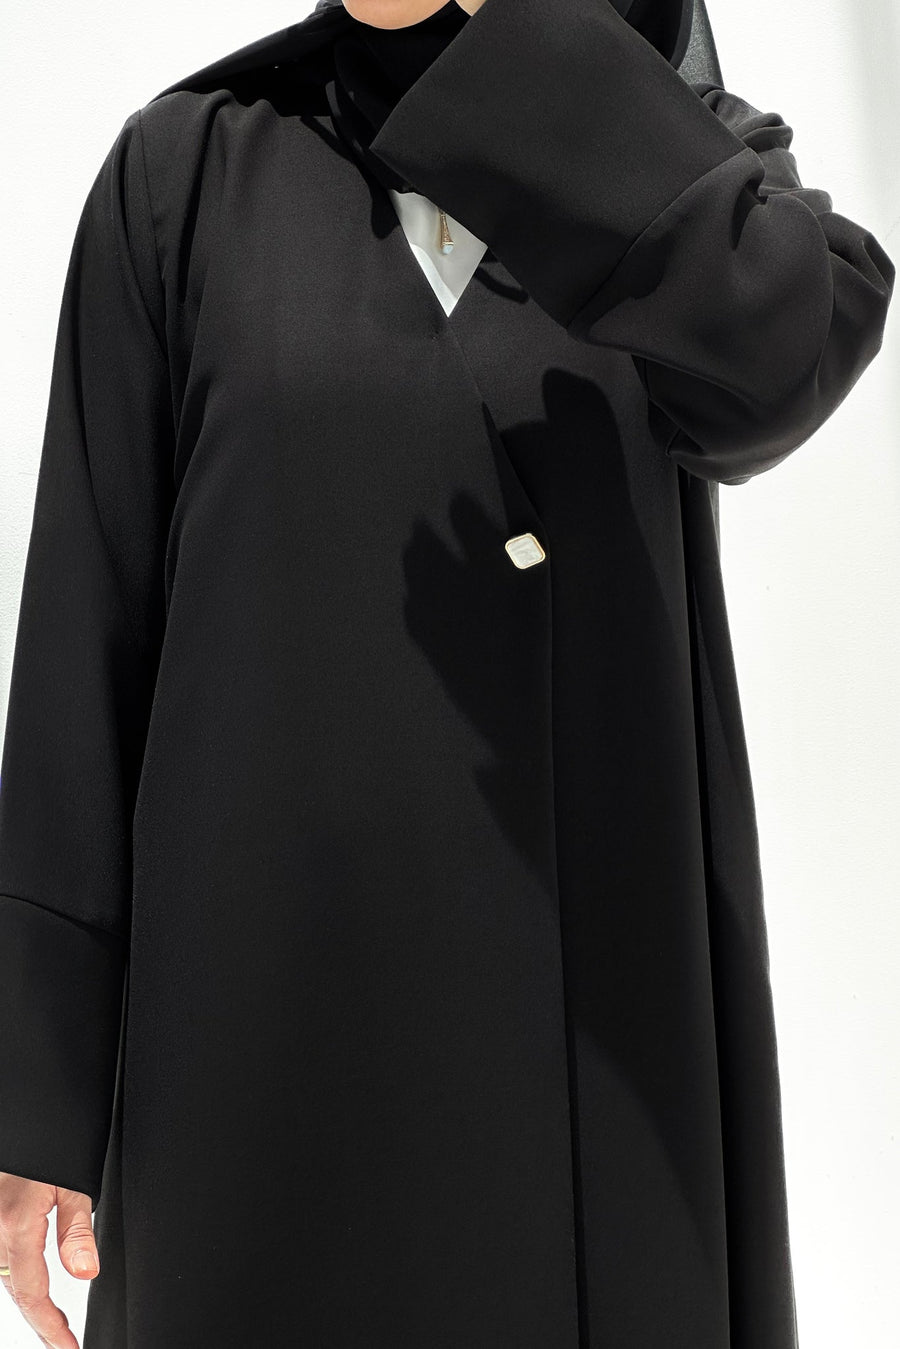 Basic Black - Open Abaya